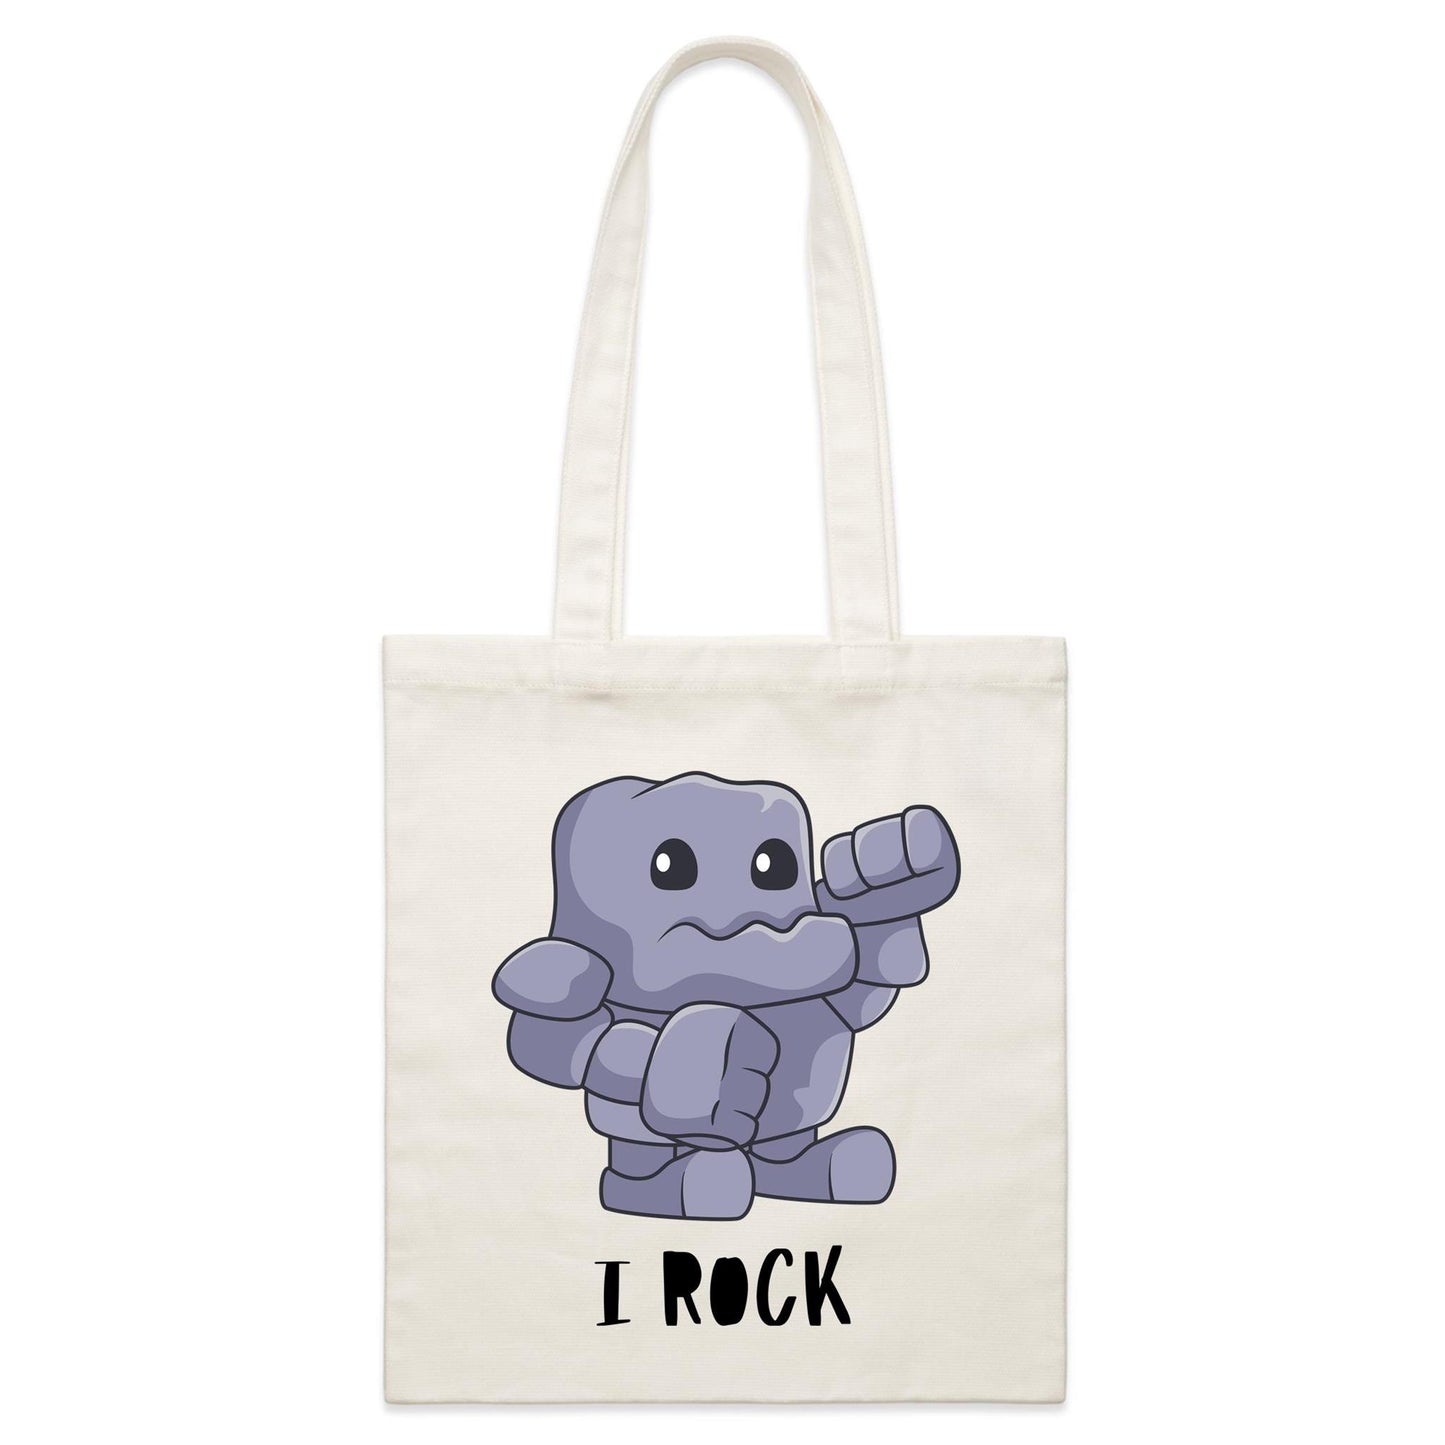 I Rock - Parcel Canvas Tote Bag Default Title Parcel Tote Bag Music